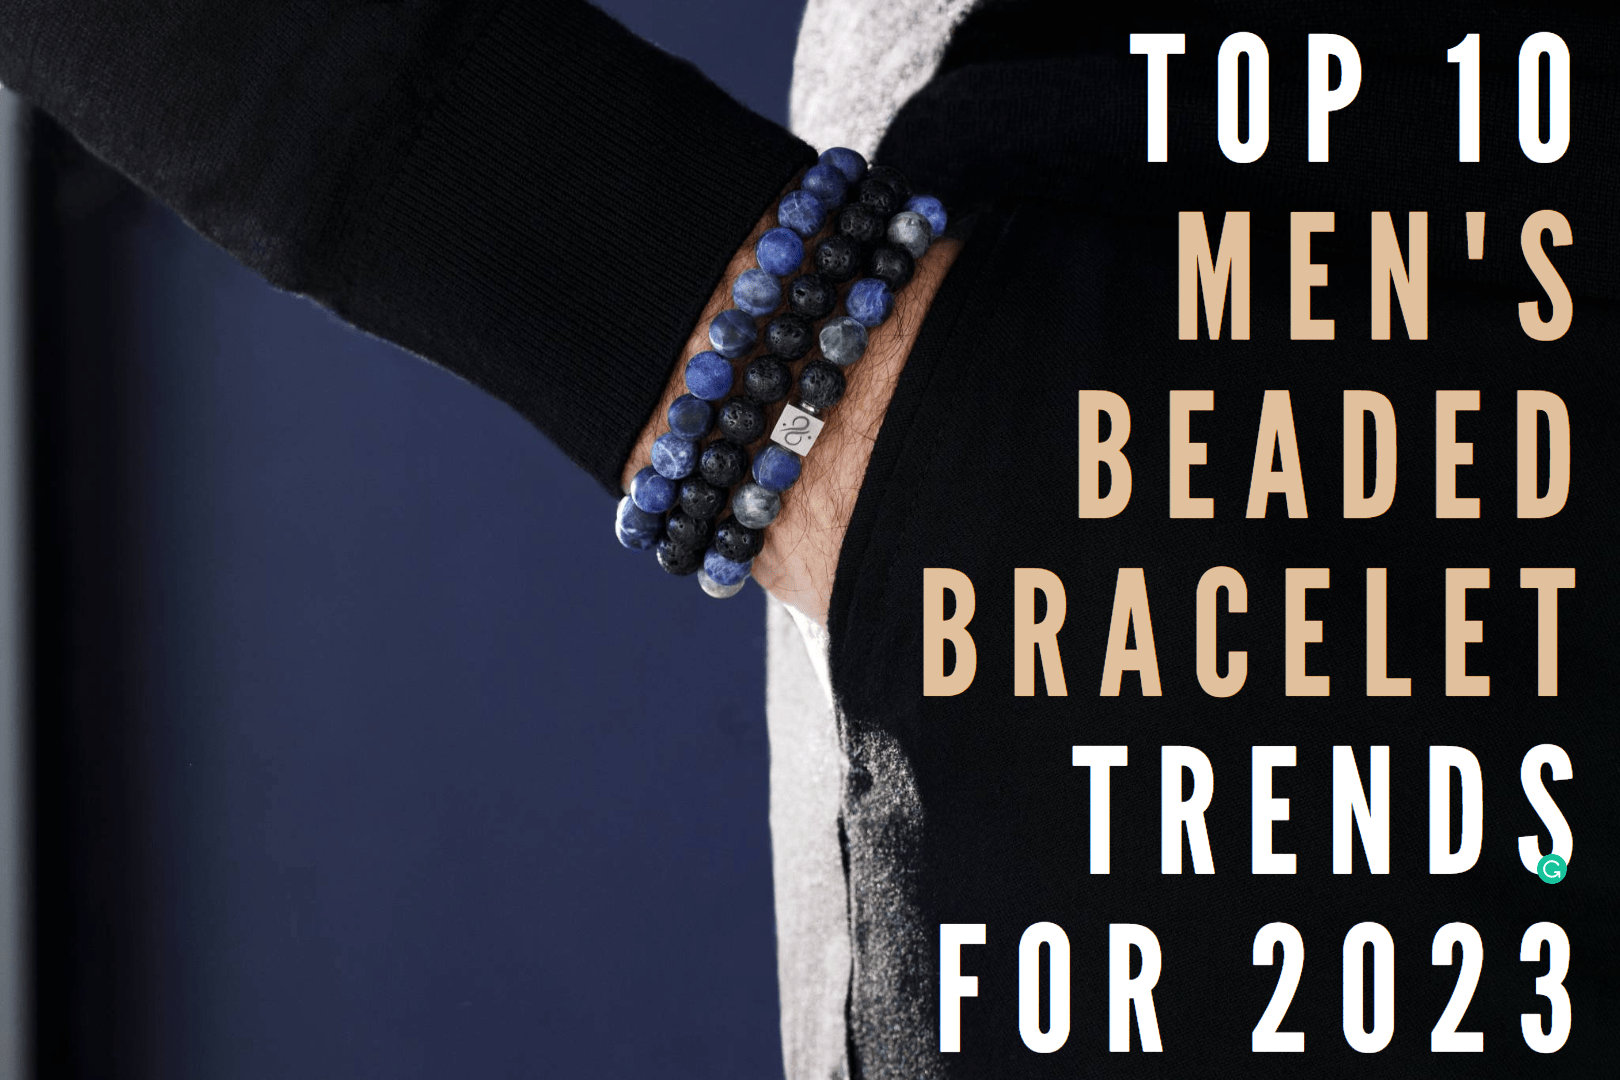 The Top 10 Men's Beaded Bracelet Trends for 2023